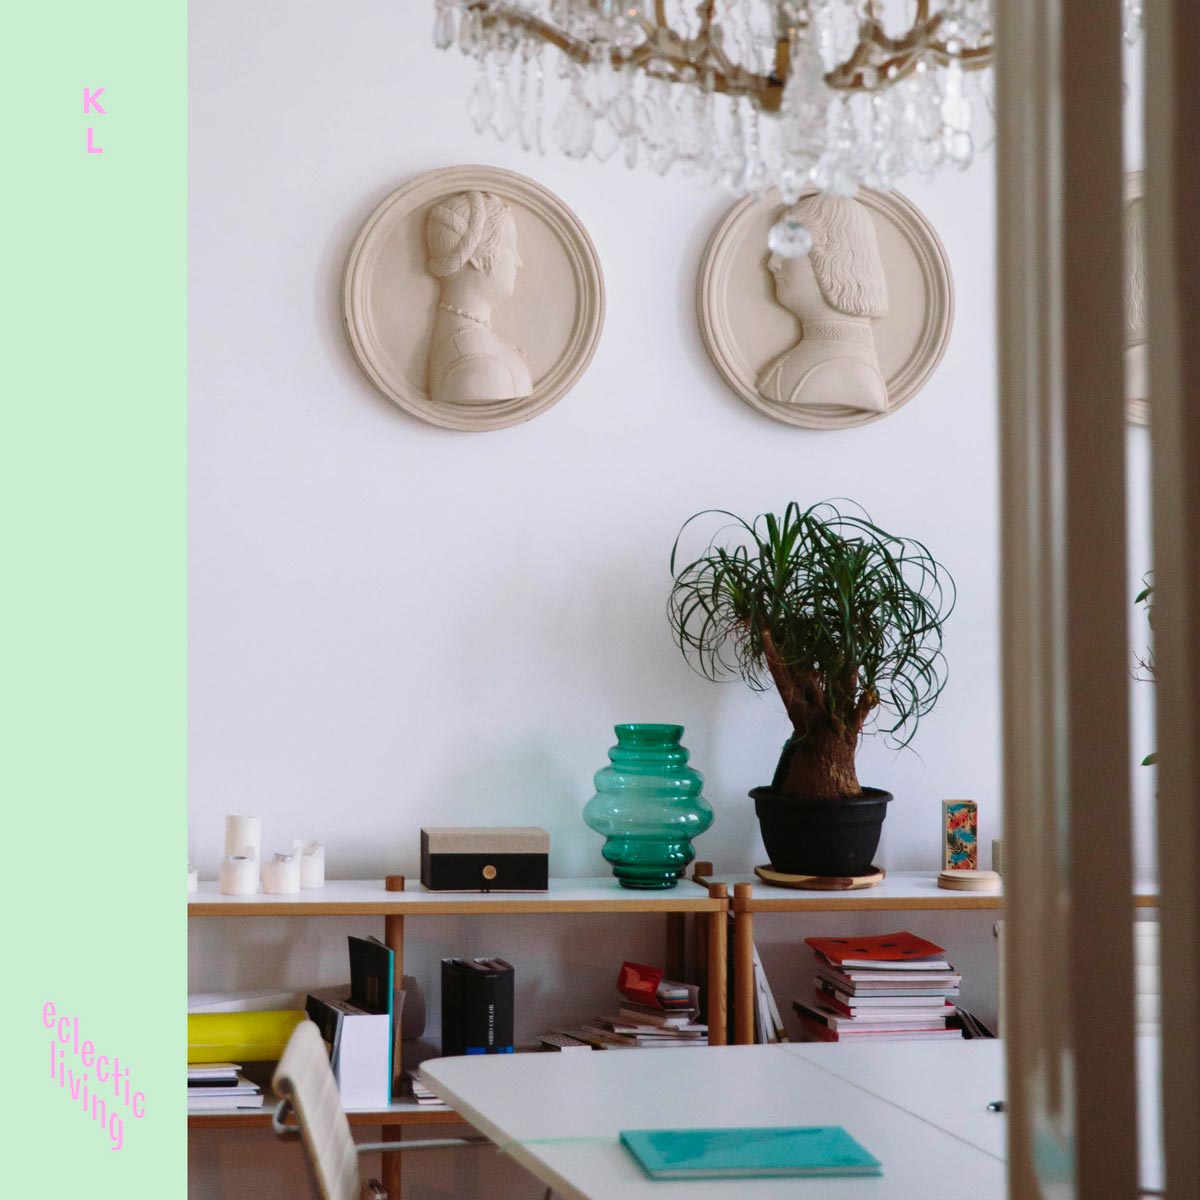 Kris Leuven Interior Designer Branding + Instagram Template